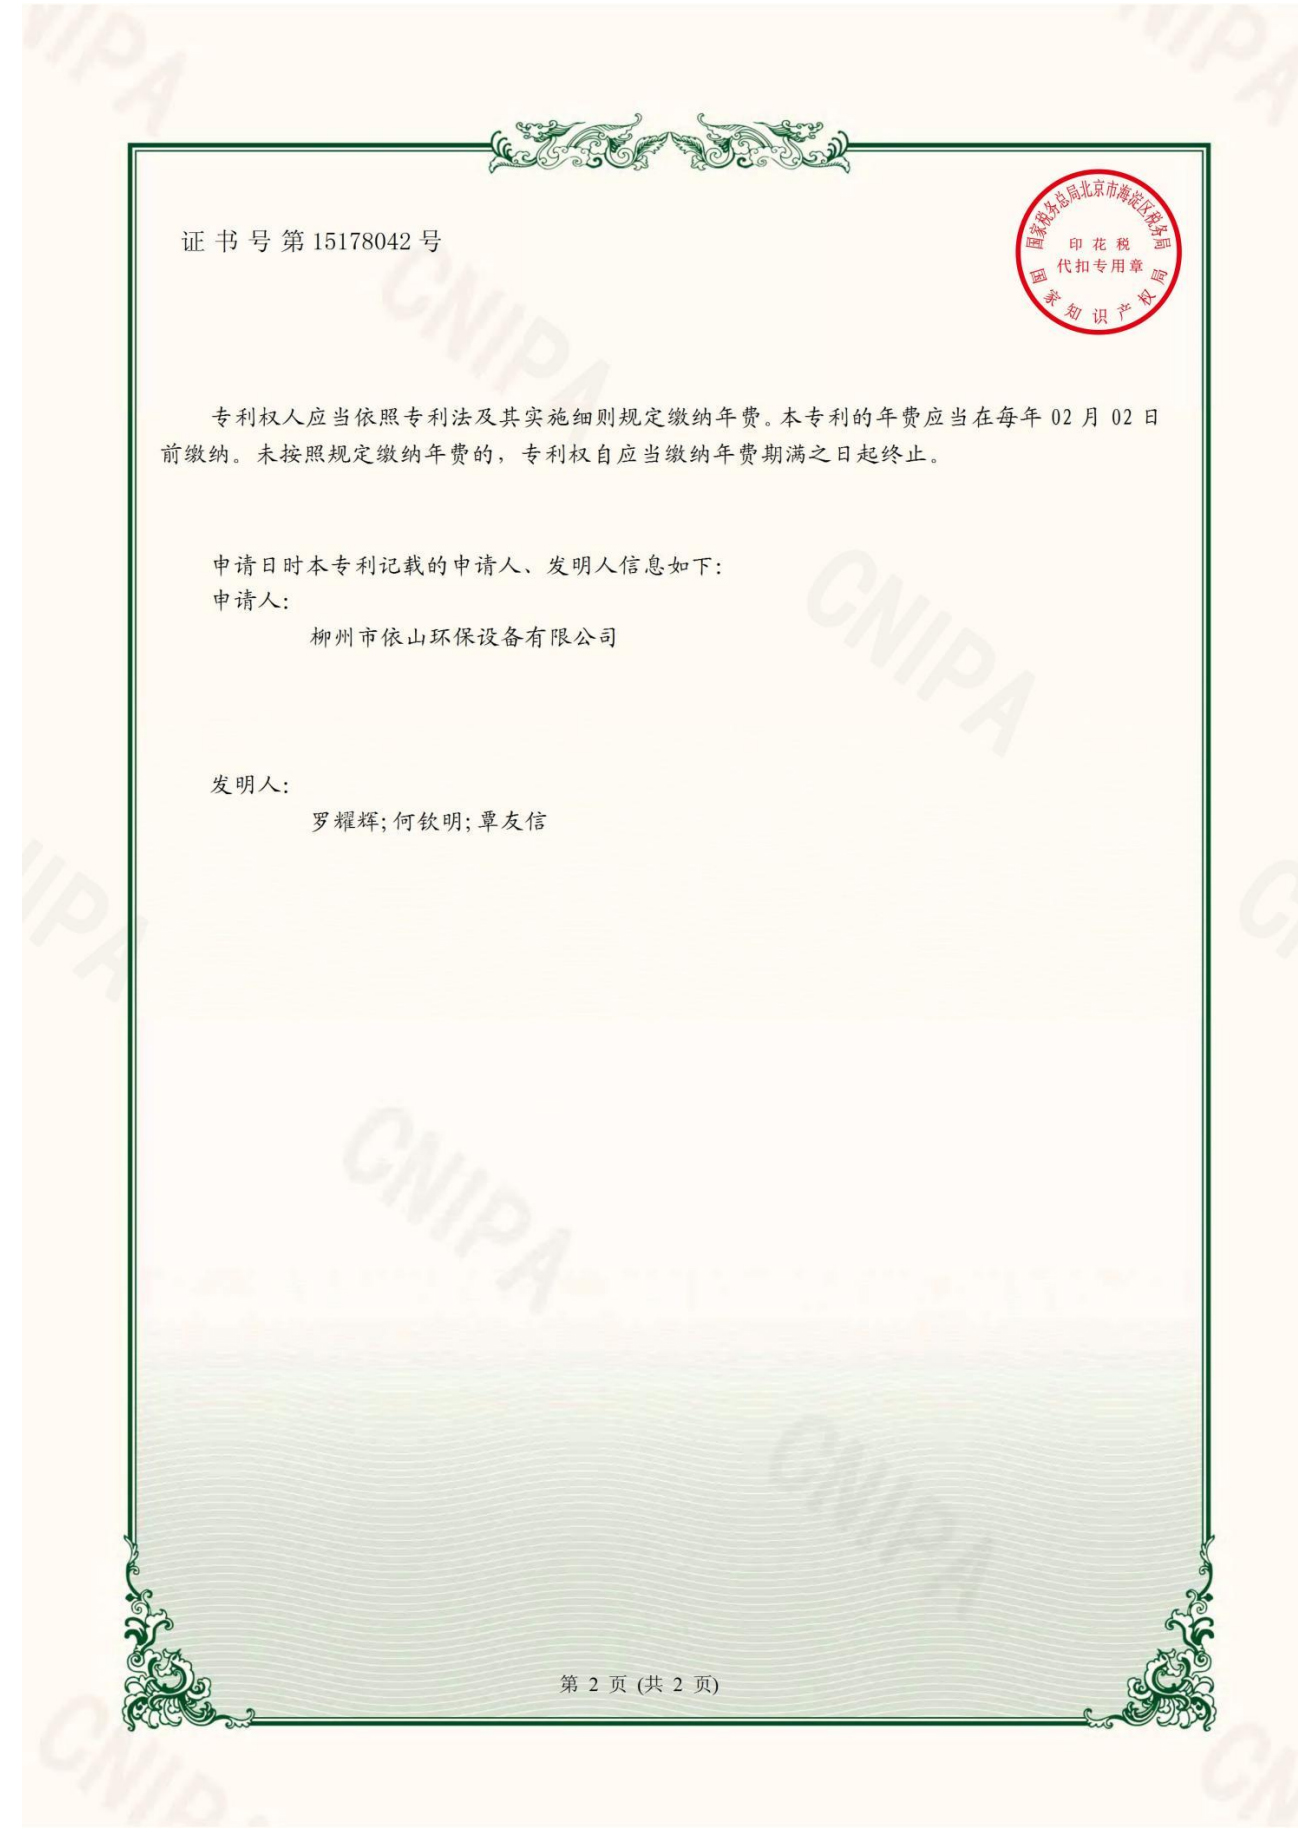 柳州市依山环保设备有限公司资质文件_15.jpg